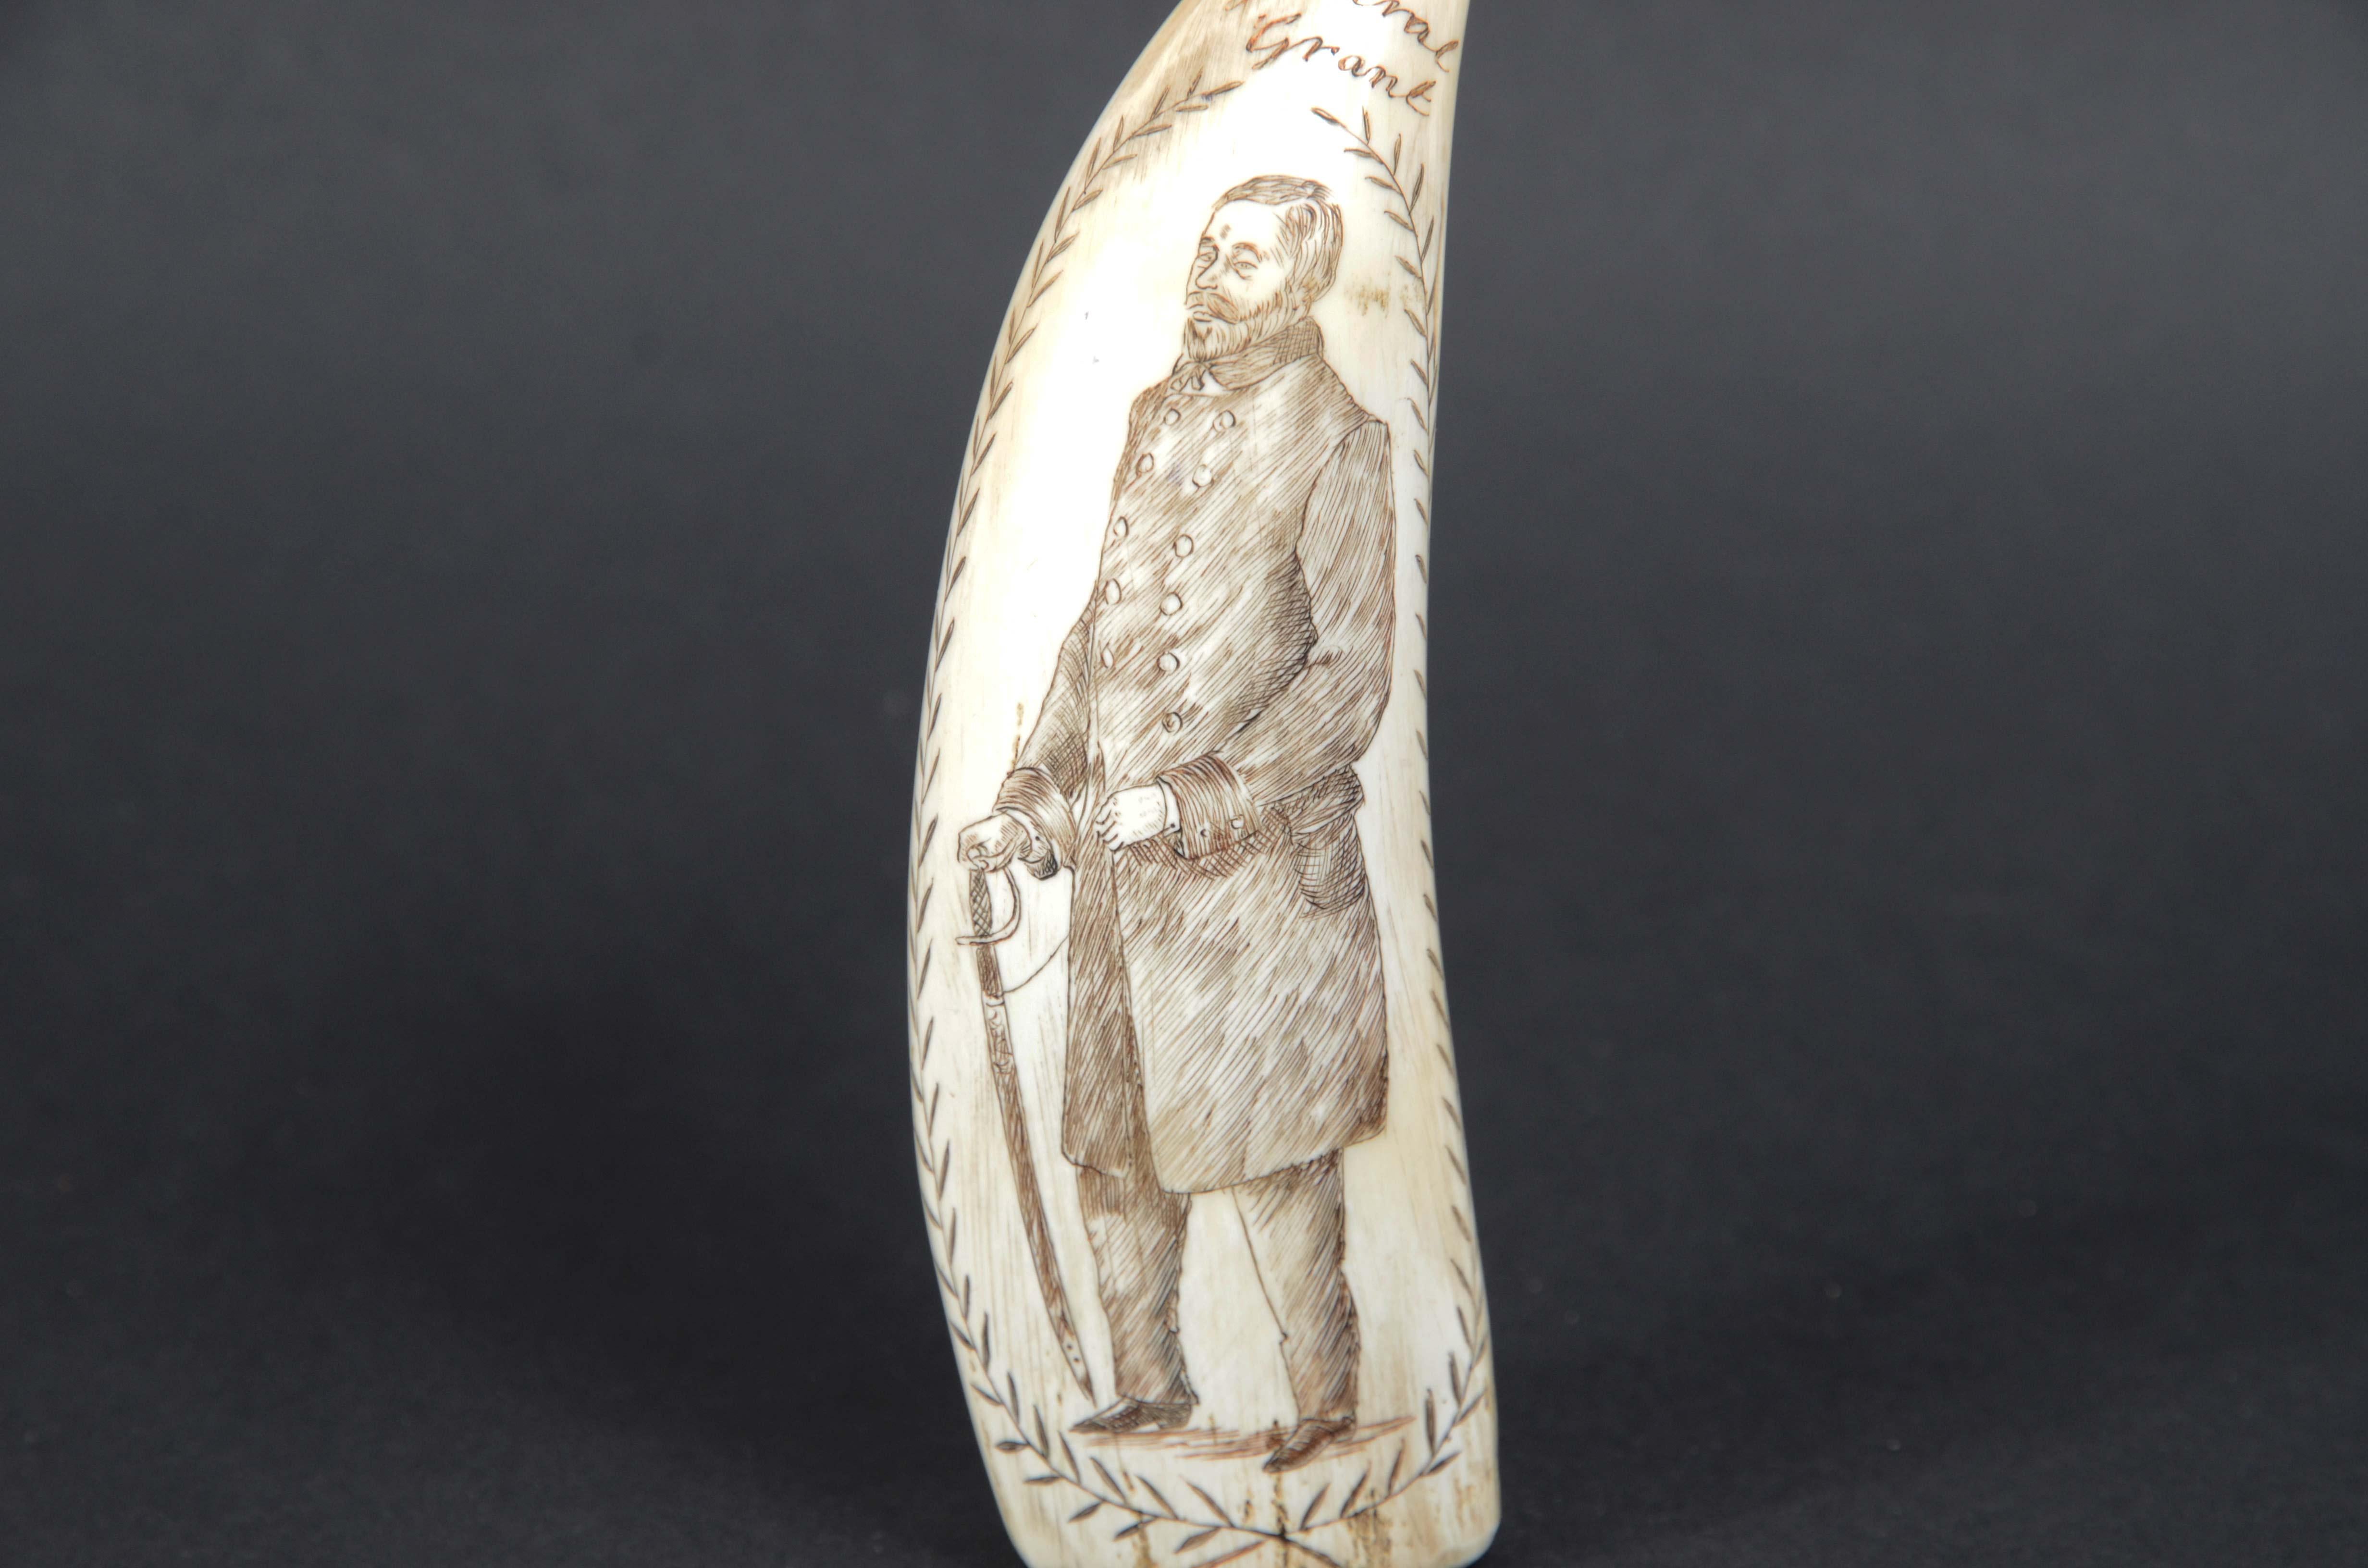 Scrimshaw di un dente di balena inciso verticalmente e di ottima  fattura, databile attorno alla metà del XIX secolo. Raffigurante  da un lato il Generale Grant (1822-1885) futuro Presidente degli Stati Uniti tra il 1869 e il 1877. Sul retro lo